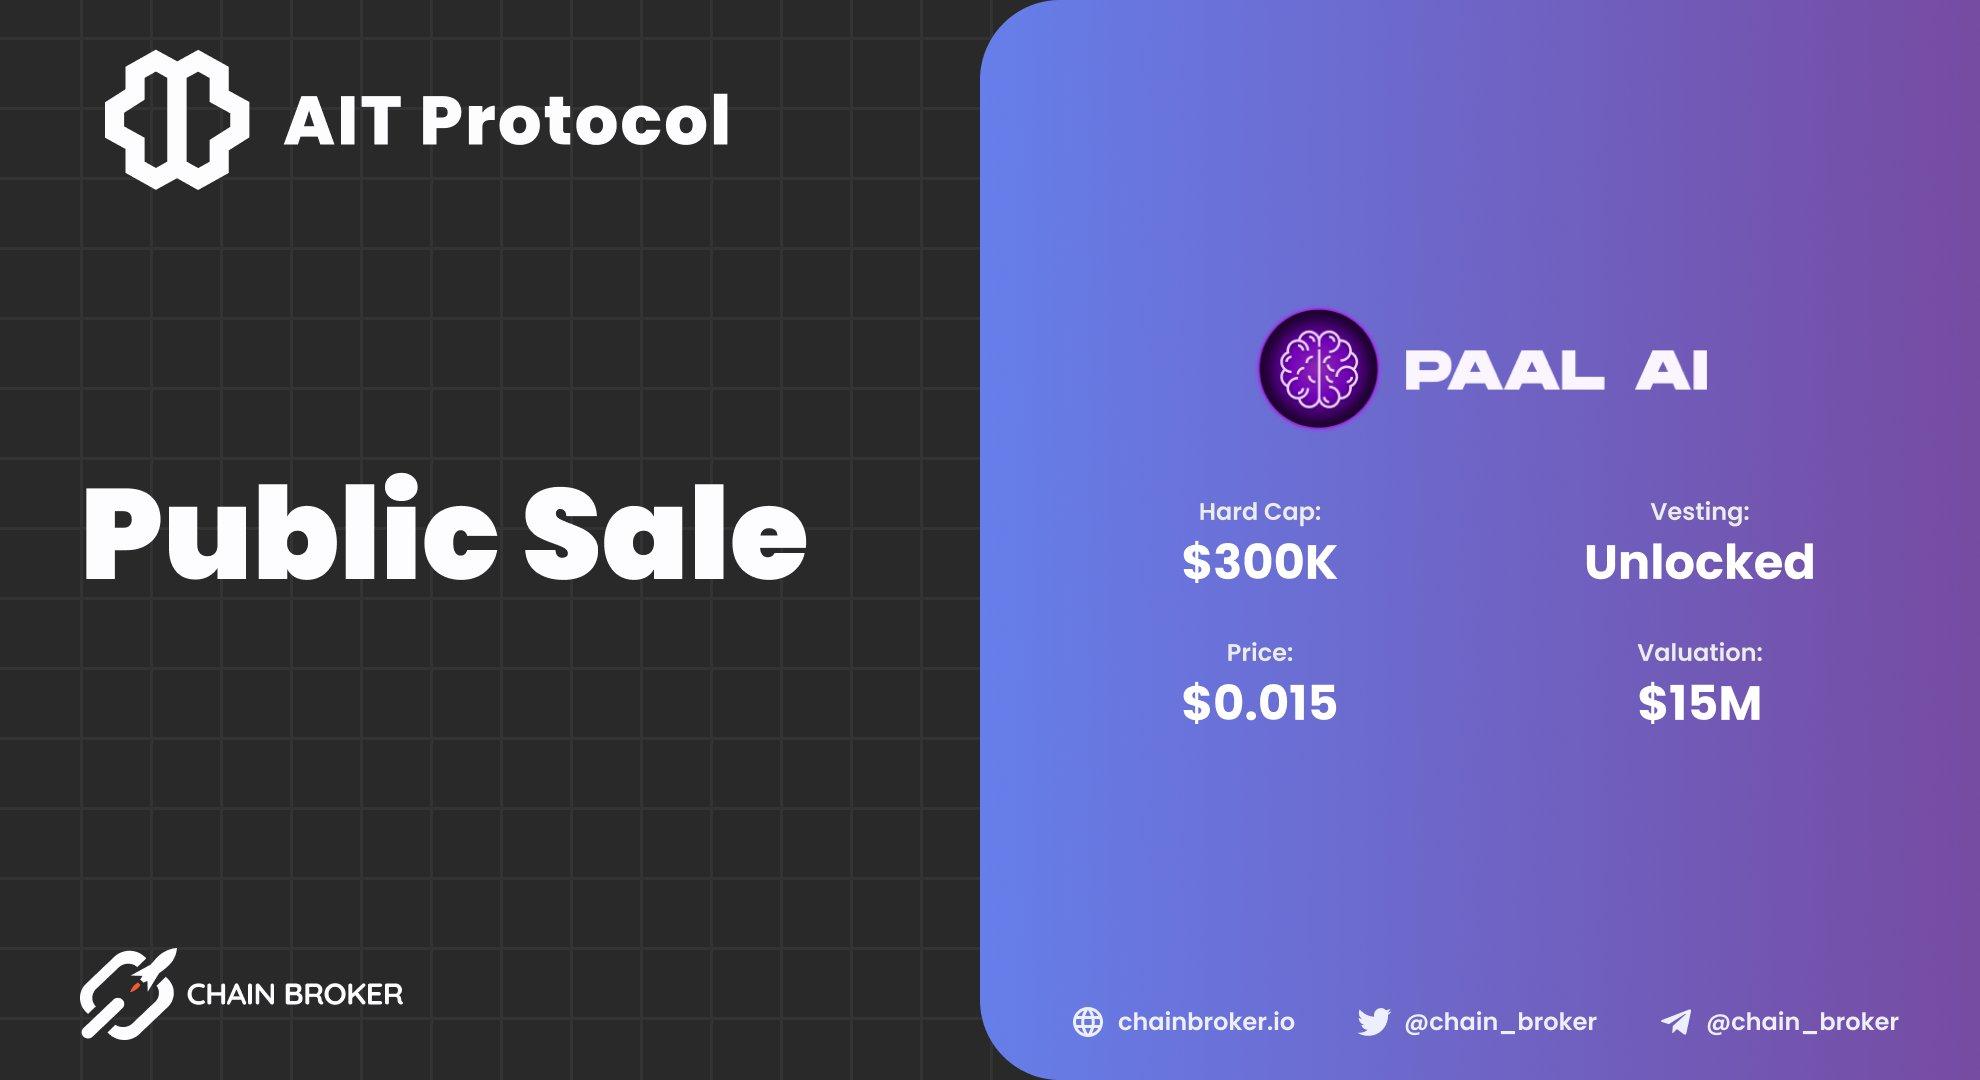 AIT Protocol public sale on PAAL details